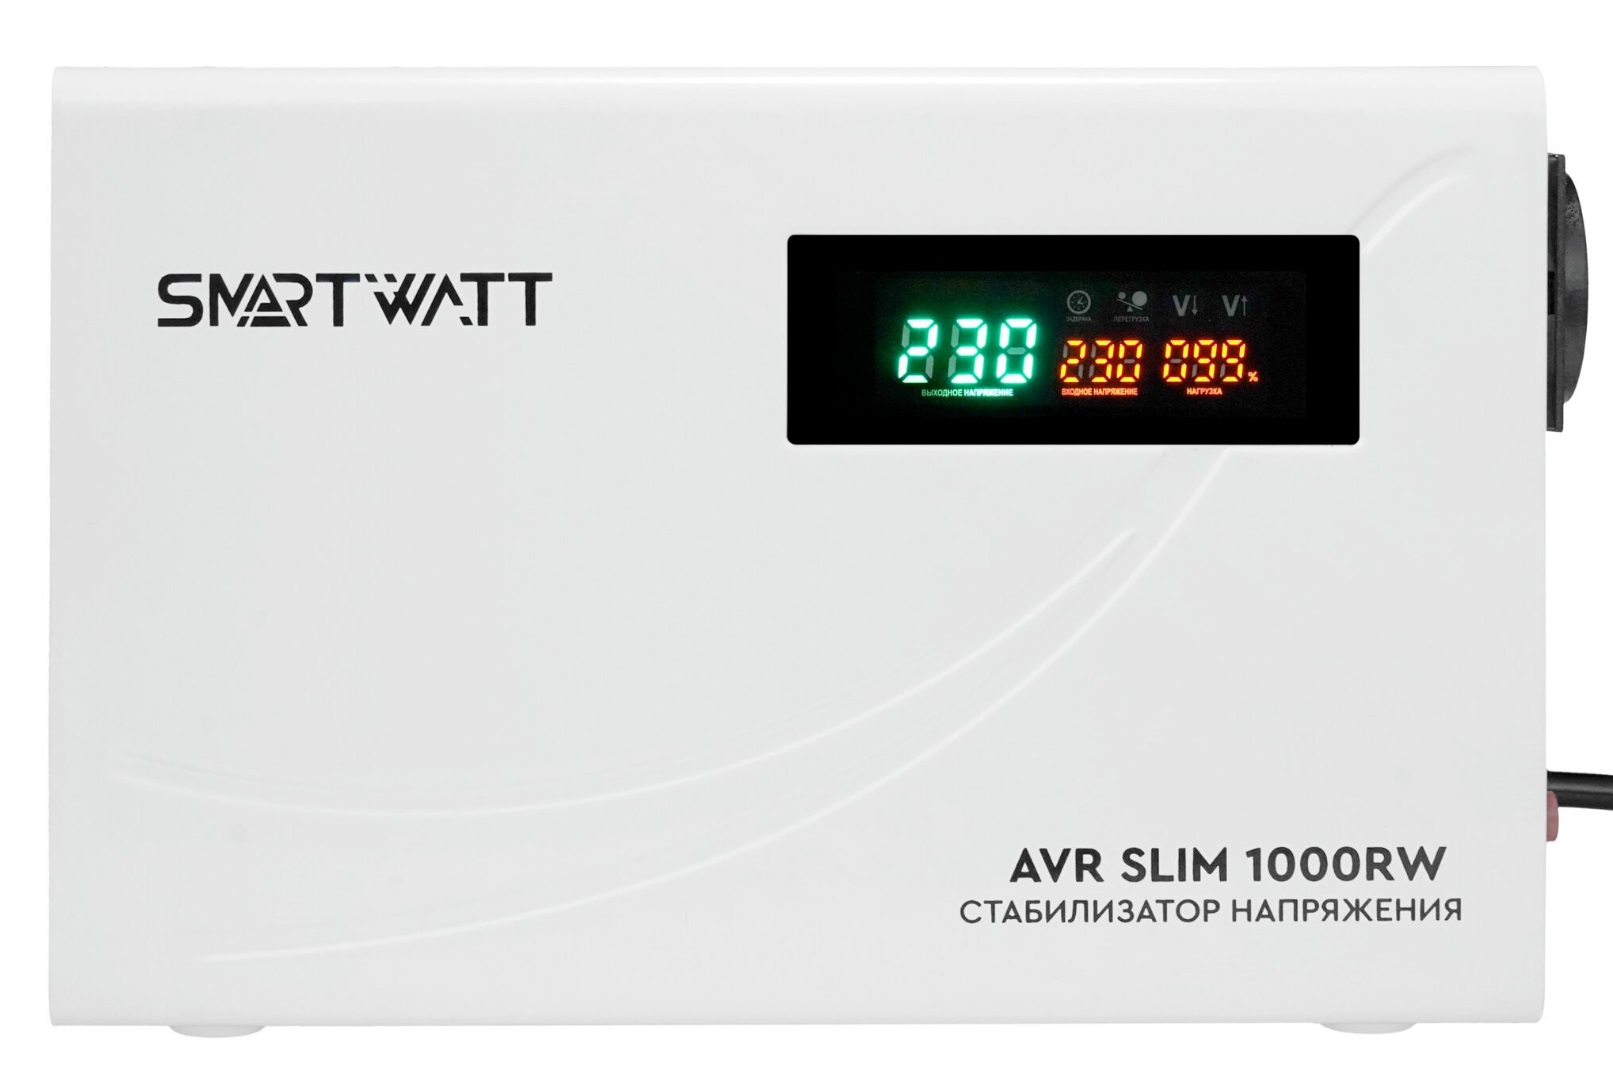 Настенный стабилизатор напряжения SMARTWATT AVR SLIM 1000RW